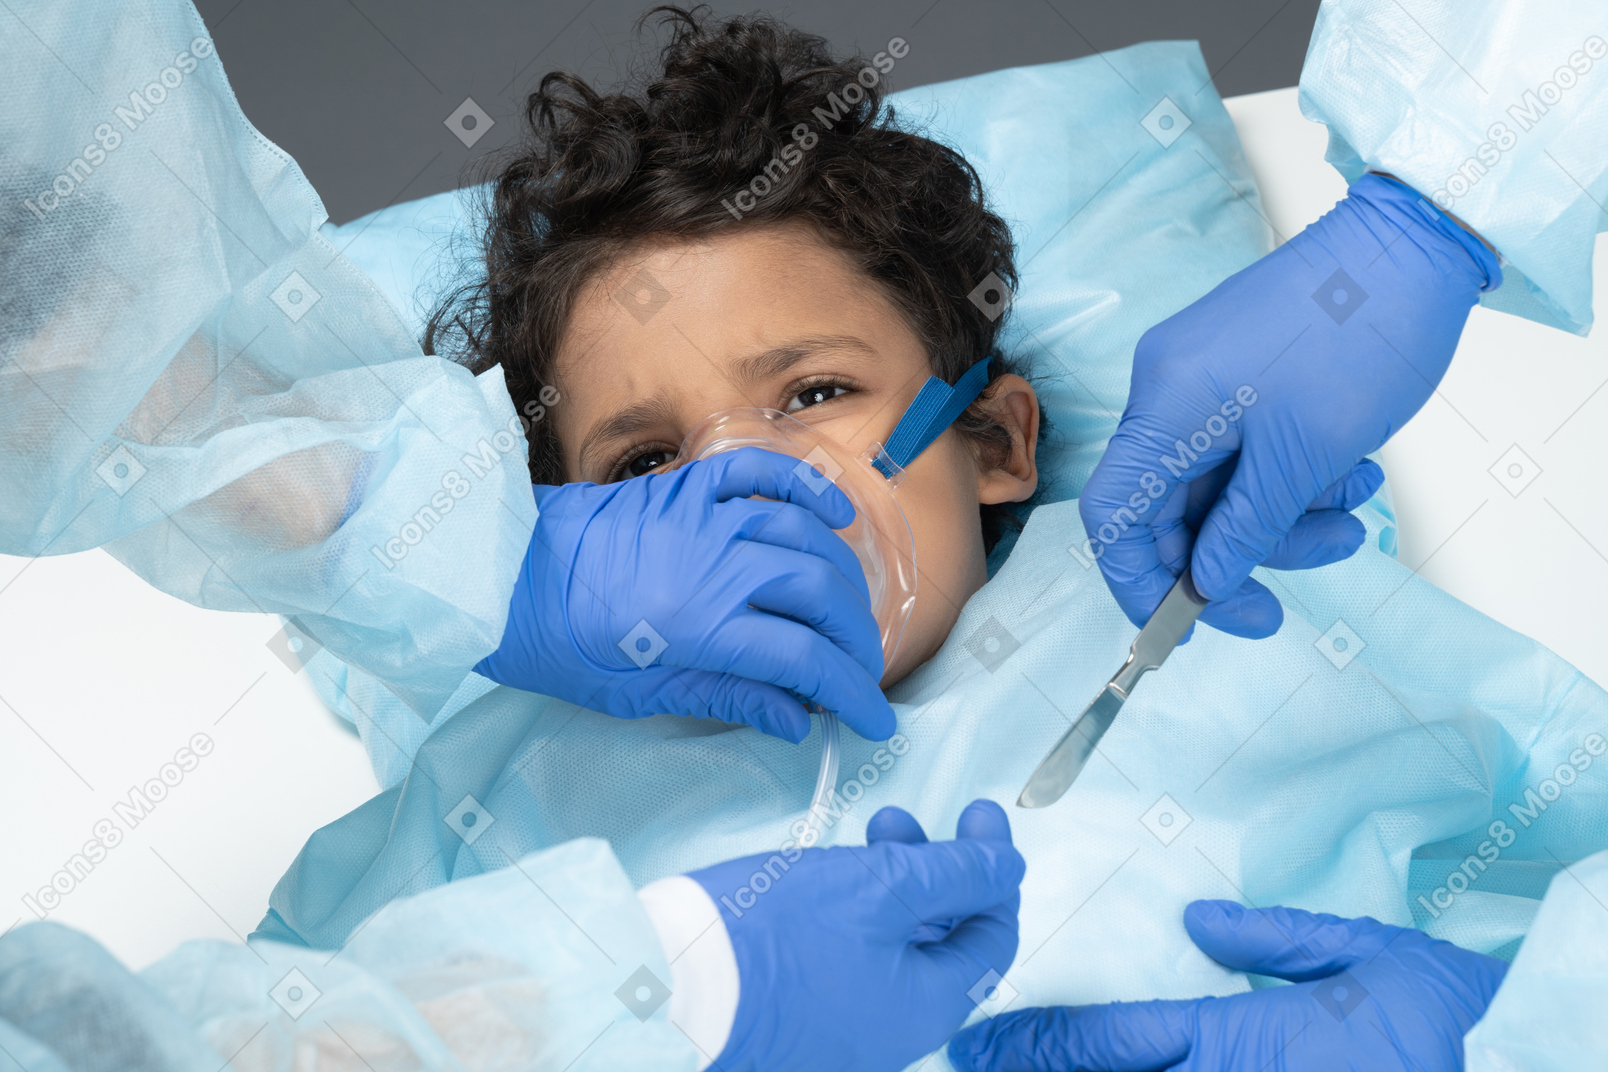 Cirujano que opera en niño